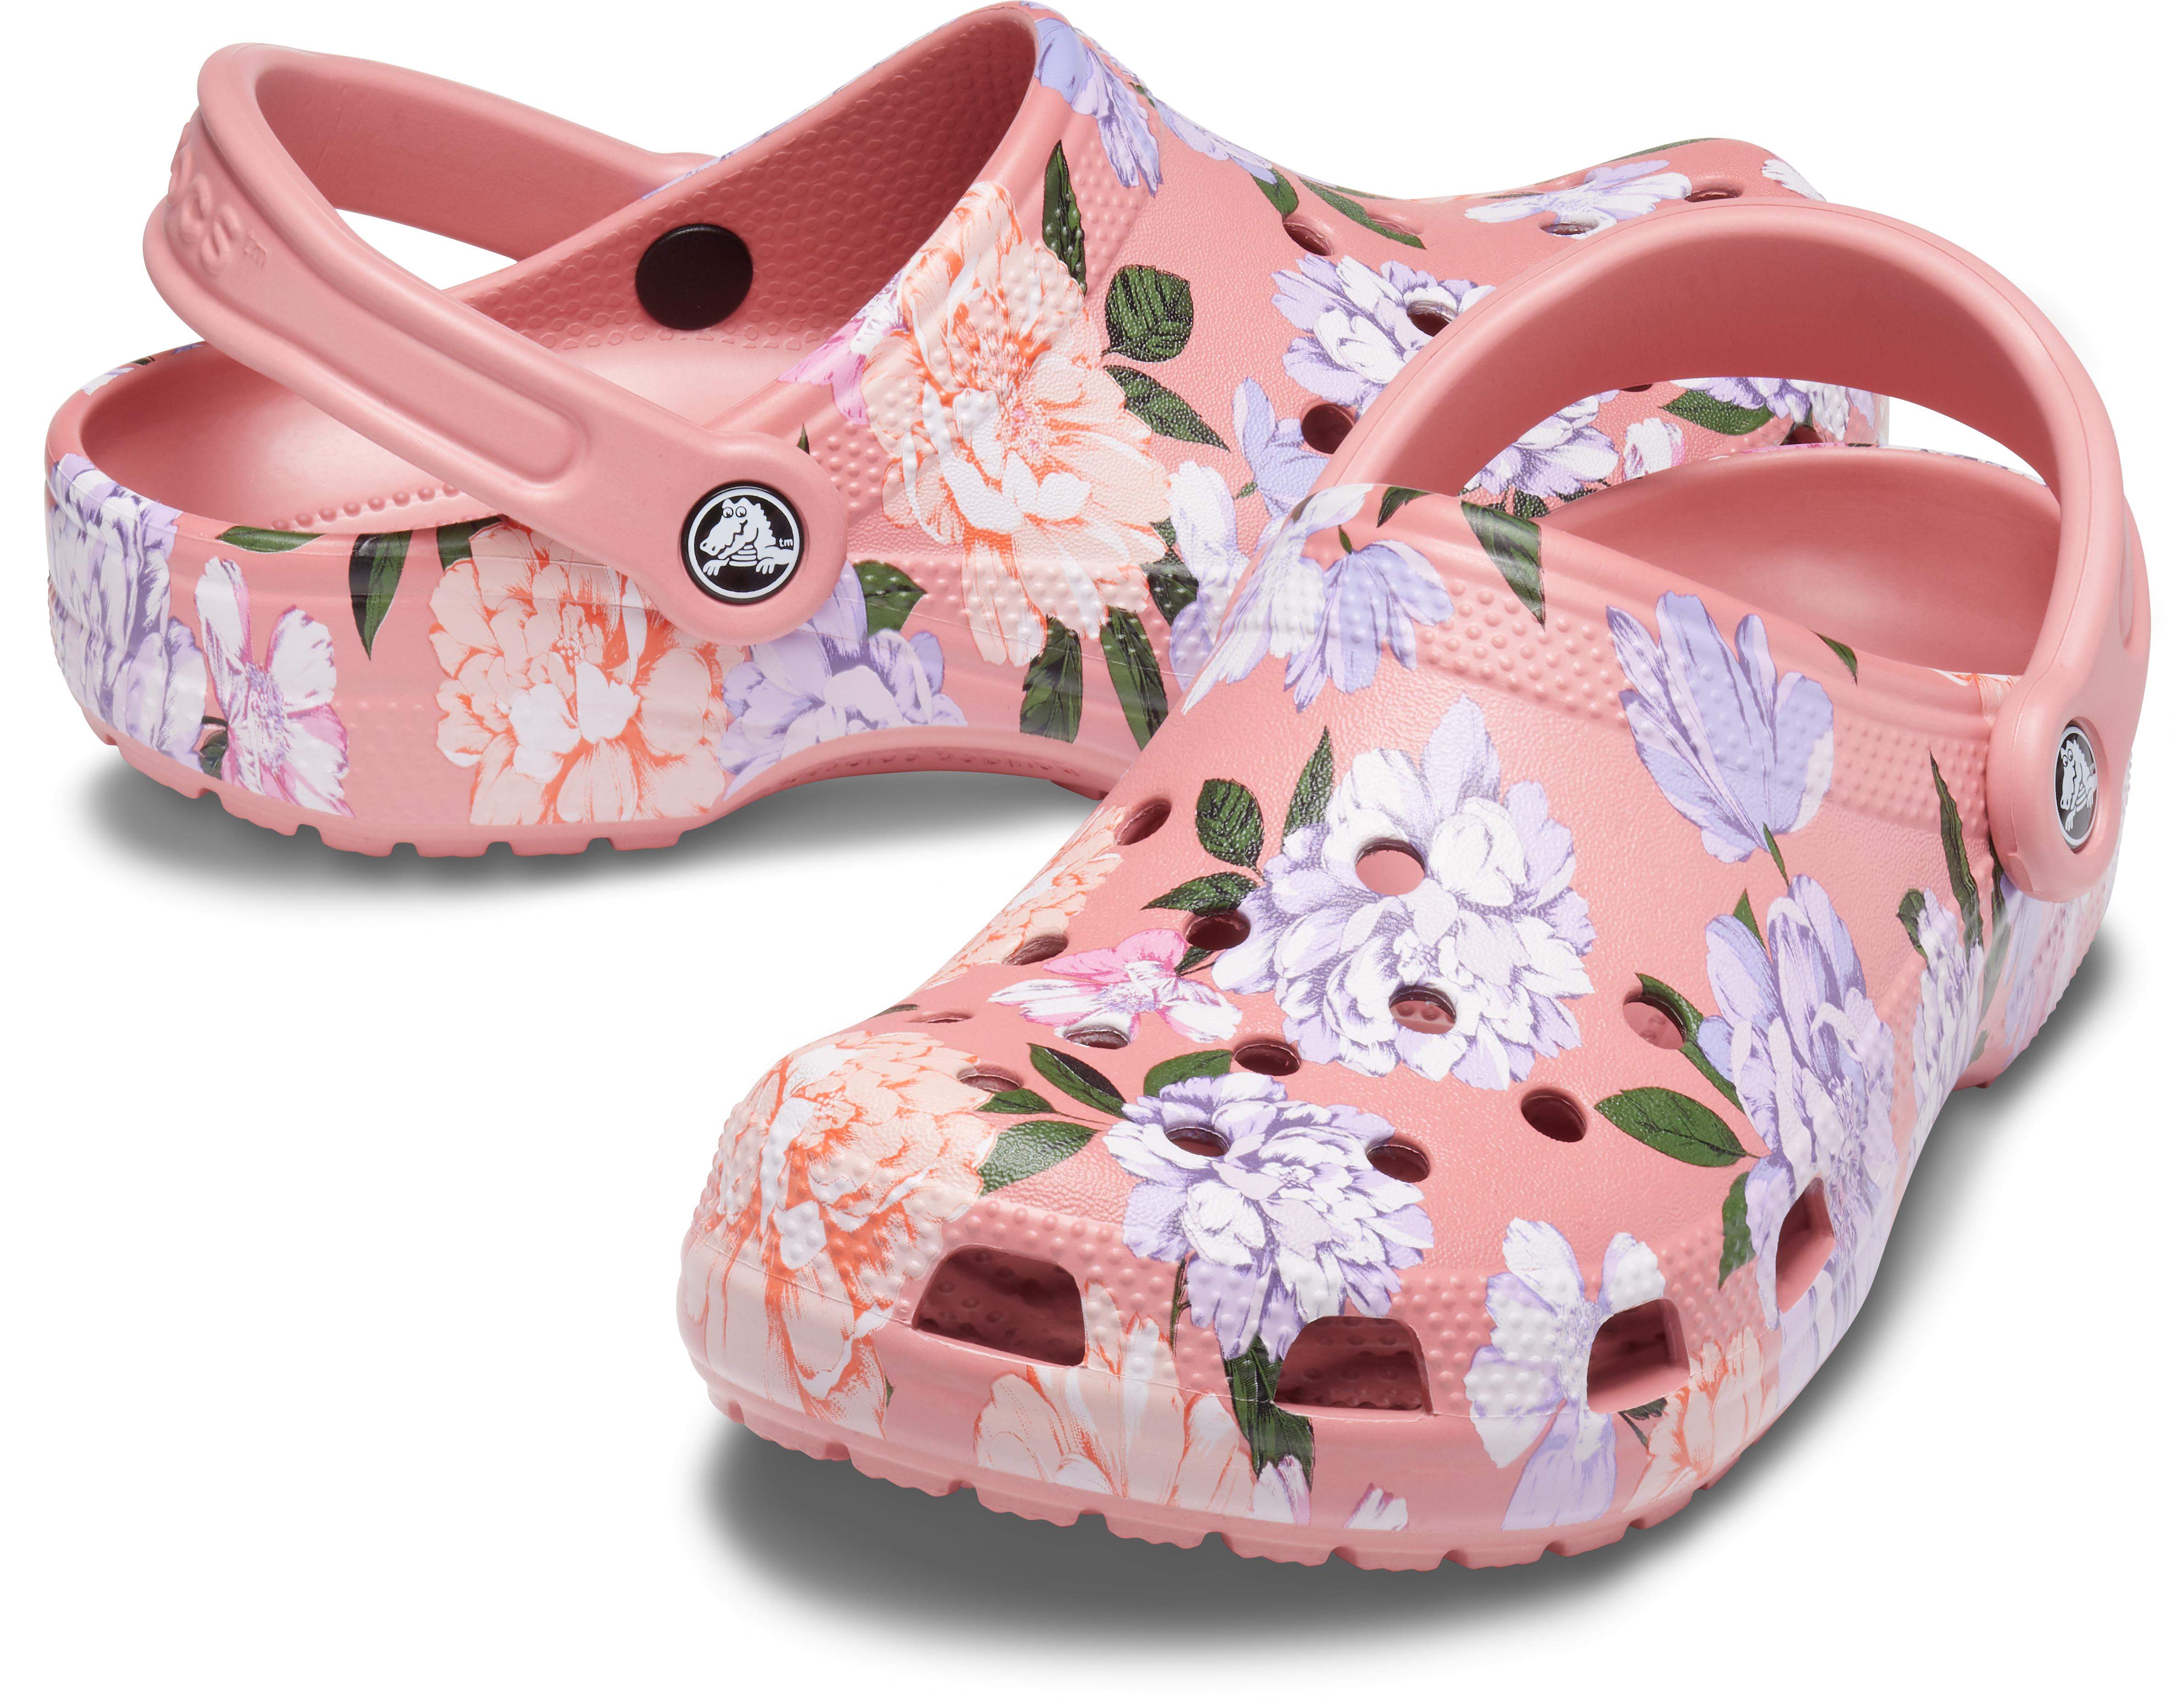 floral print crocs